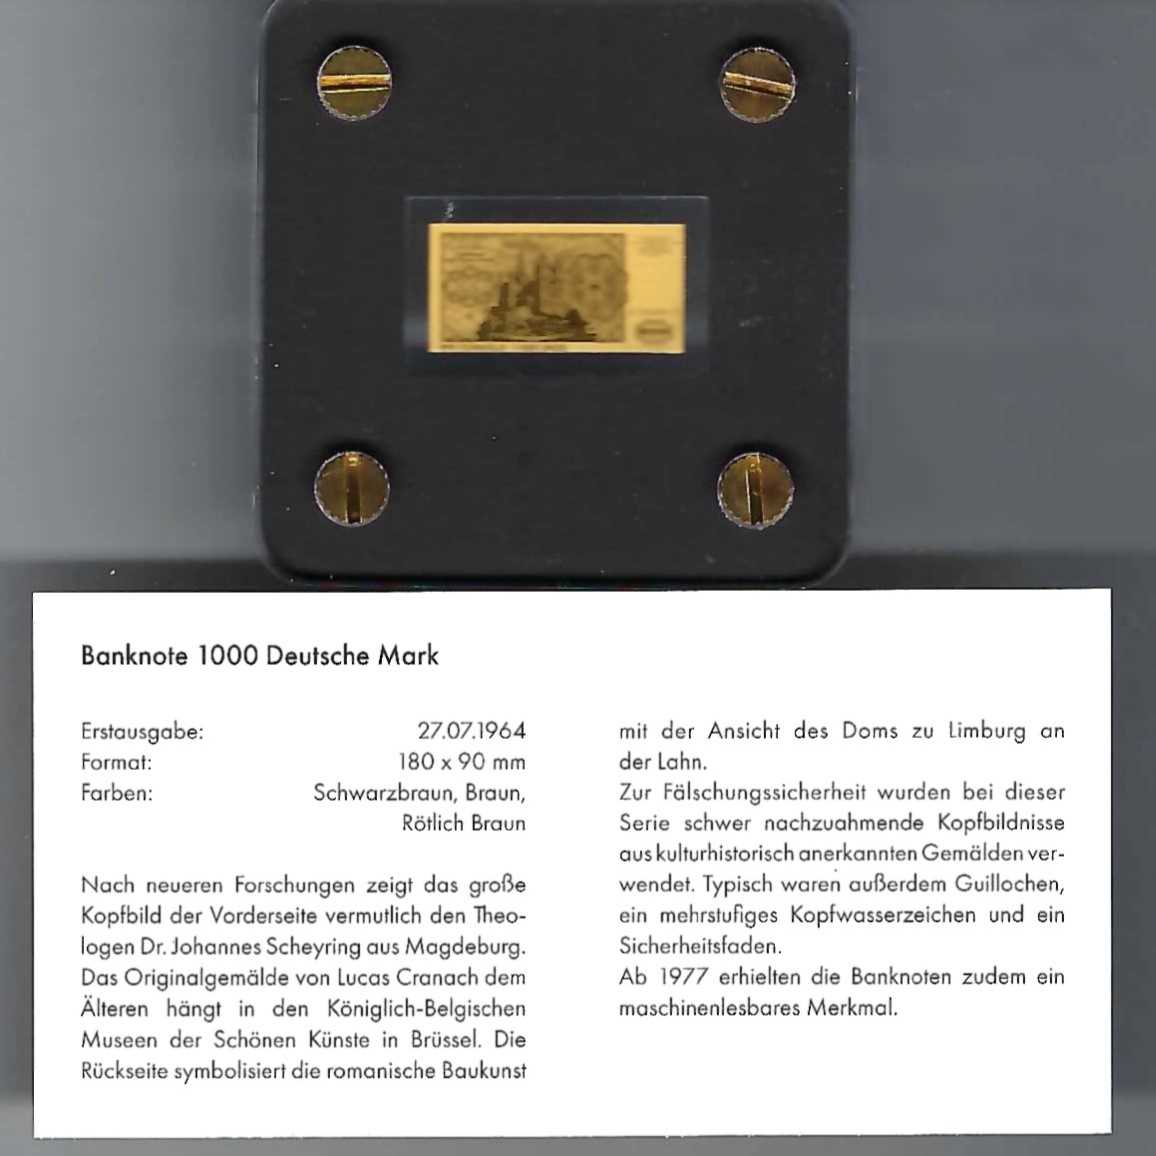  Goldbarren Deutsche Mark Feingold 999 1/500 oz Golden Gate Koblenz Frank Maurer Koblenz AB 728   